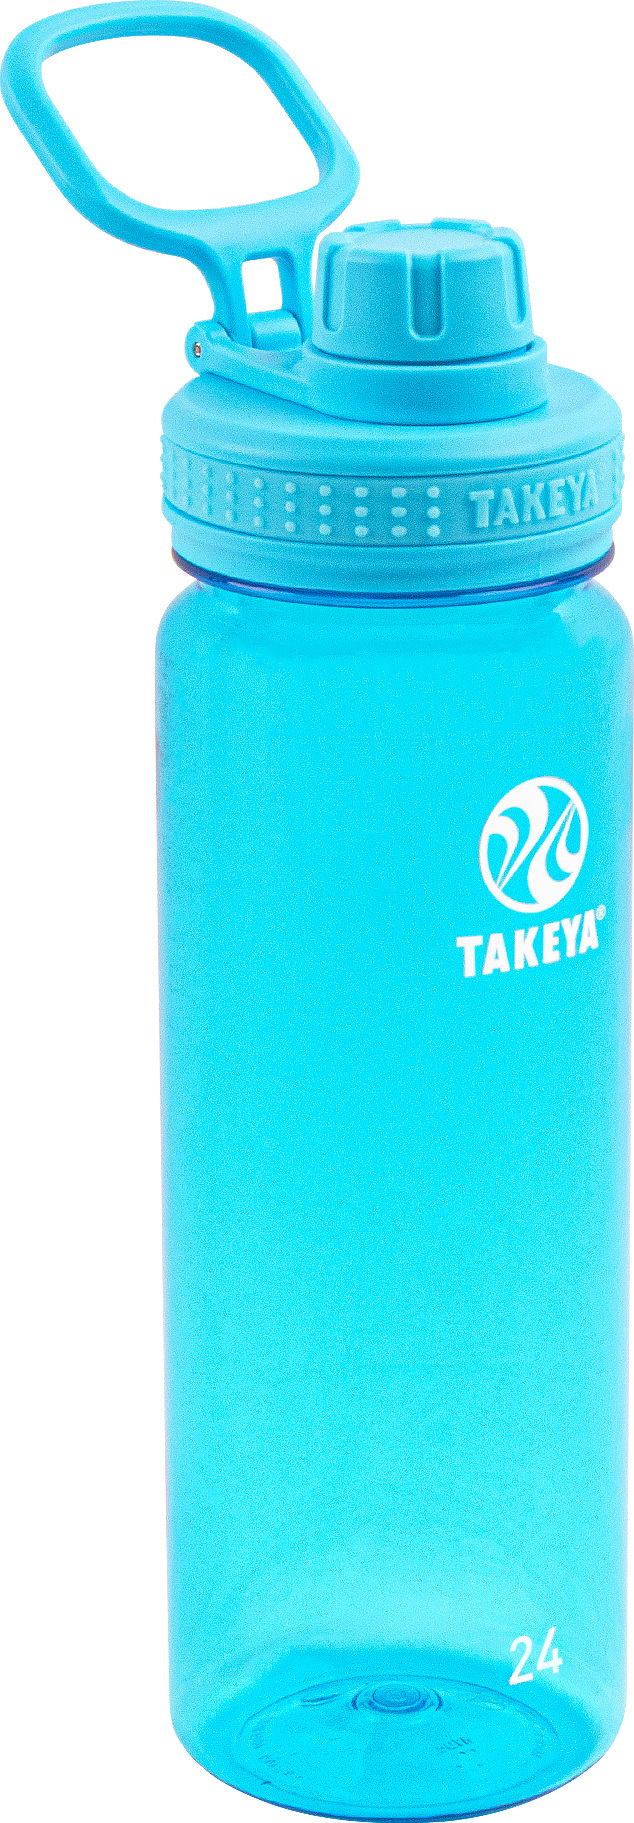 Takeya Tritan Bottle 700 ml Breeze Blue 700 ml, Breeze Blue